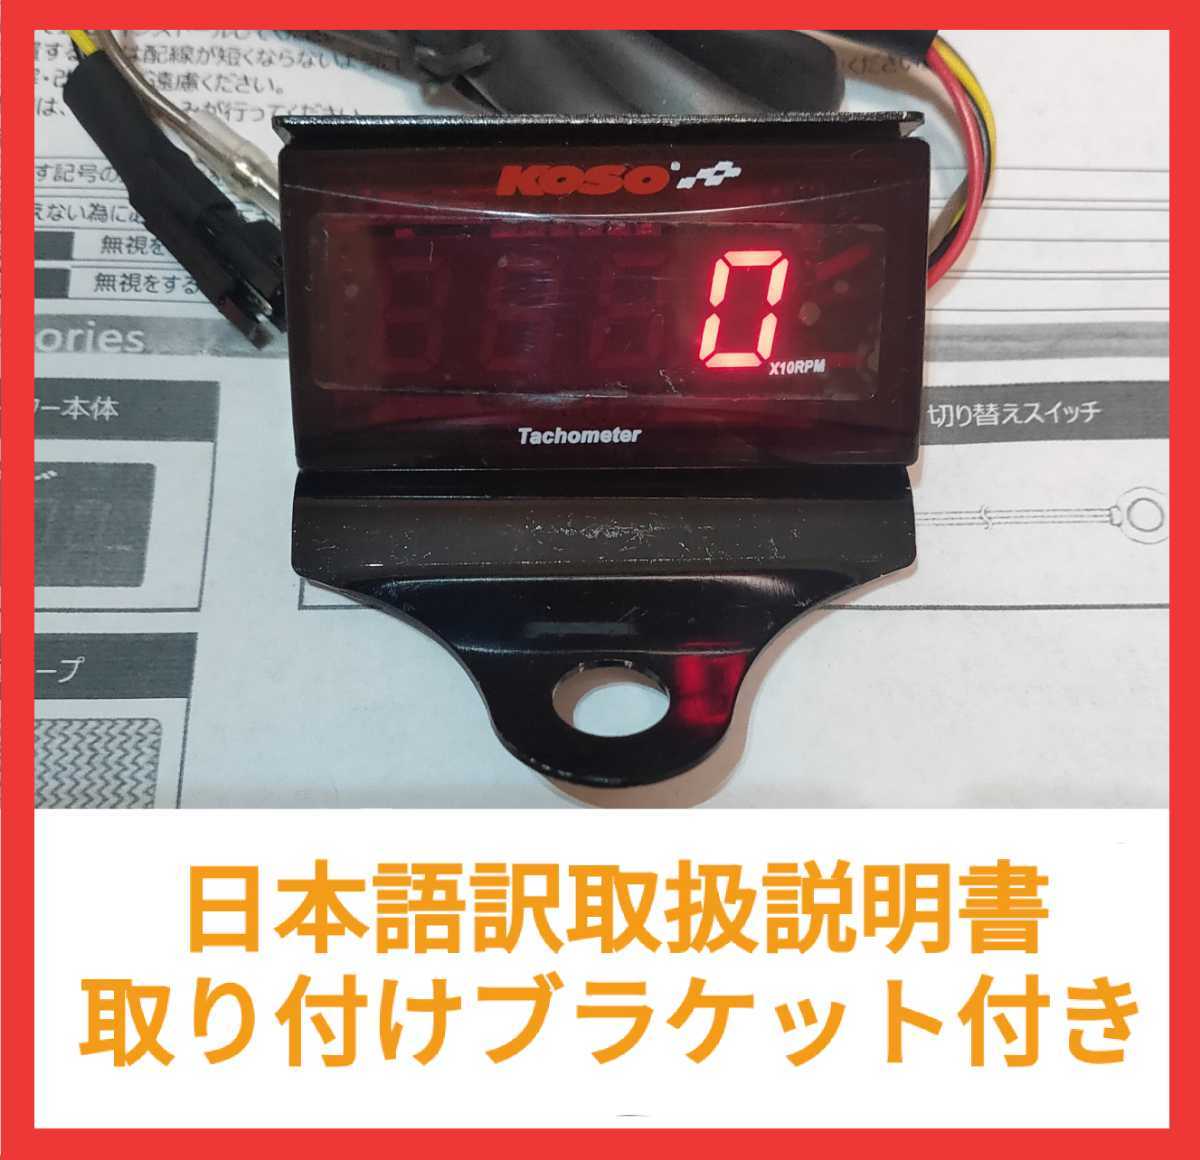 KOSO スリムデジタルタコメーター ブラケット付き。簡単な動作確認済み。汎用タコメーター デジタル表示 表示色 赤 ヤマハ YAMAHA_画像1